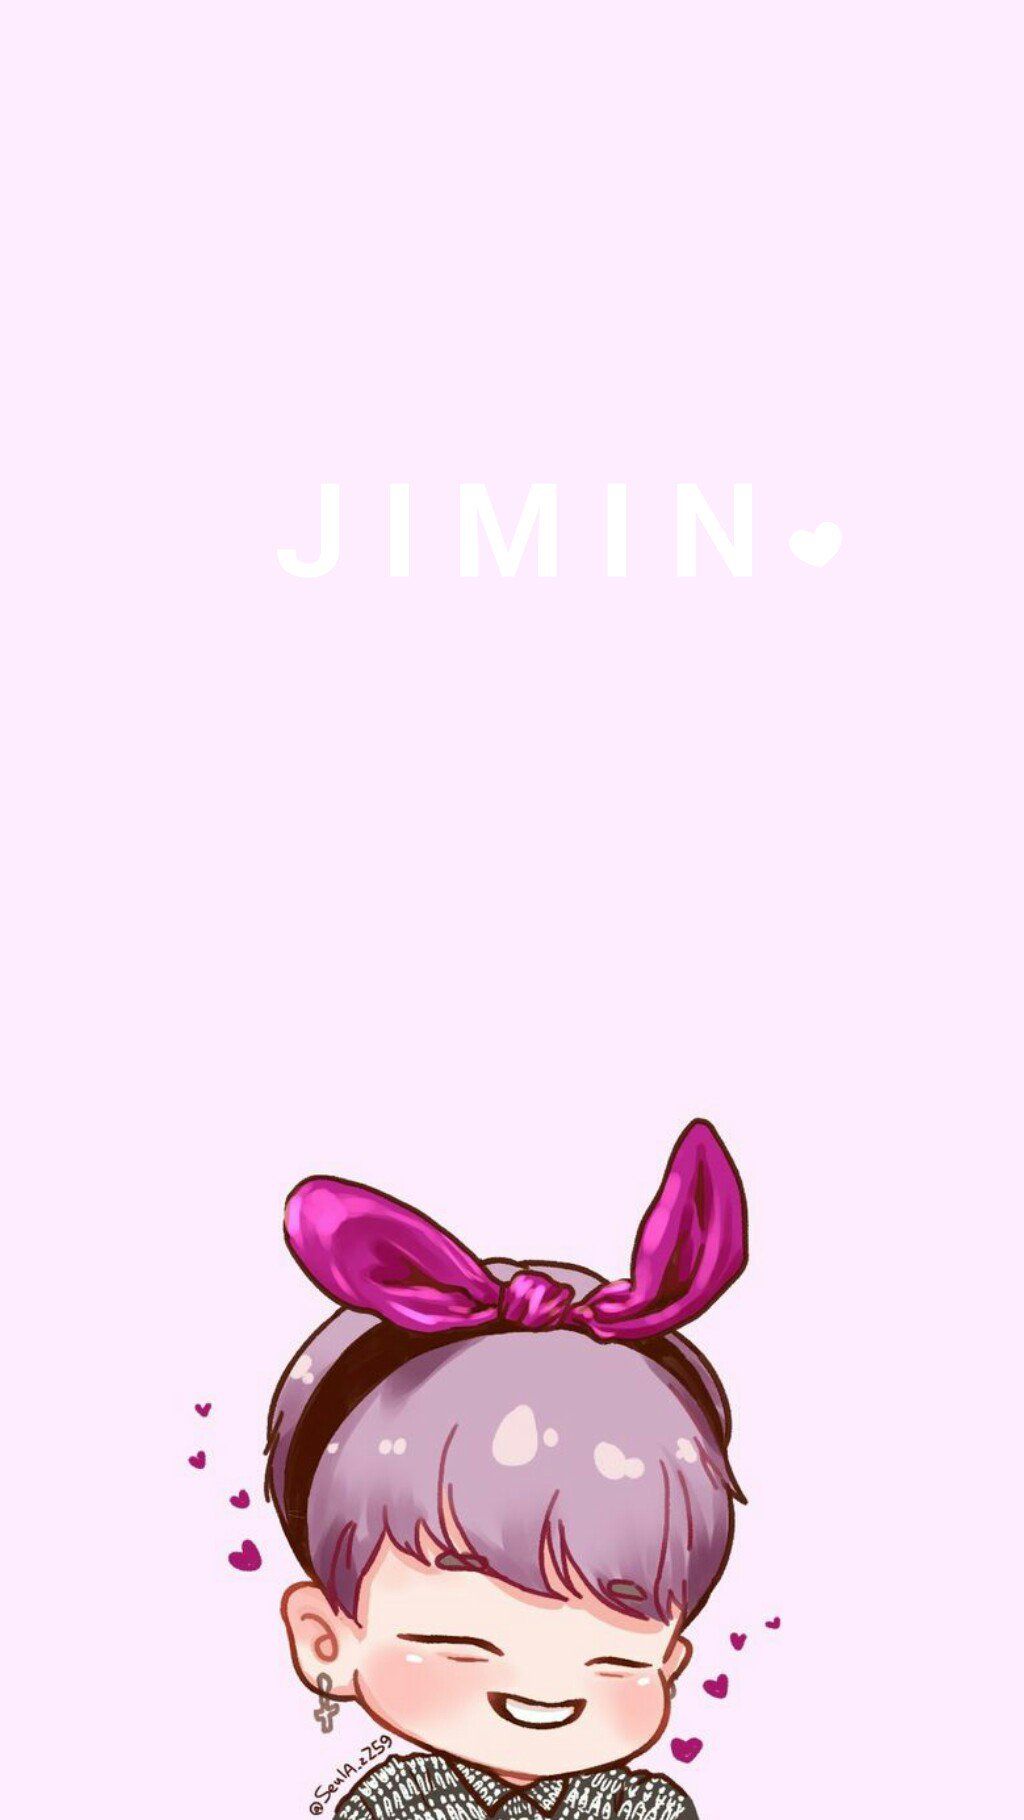 지미니듀 jimin wallpaper (made by me) (the art